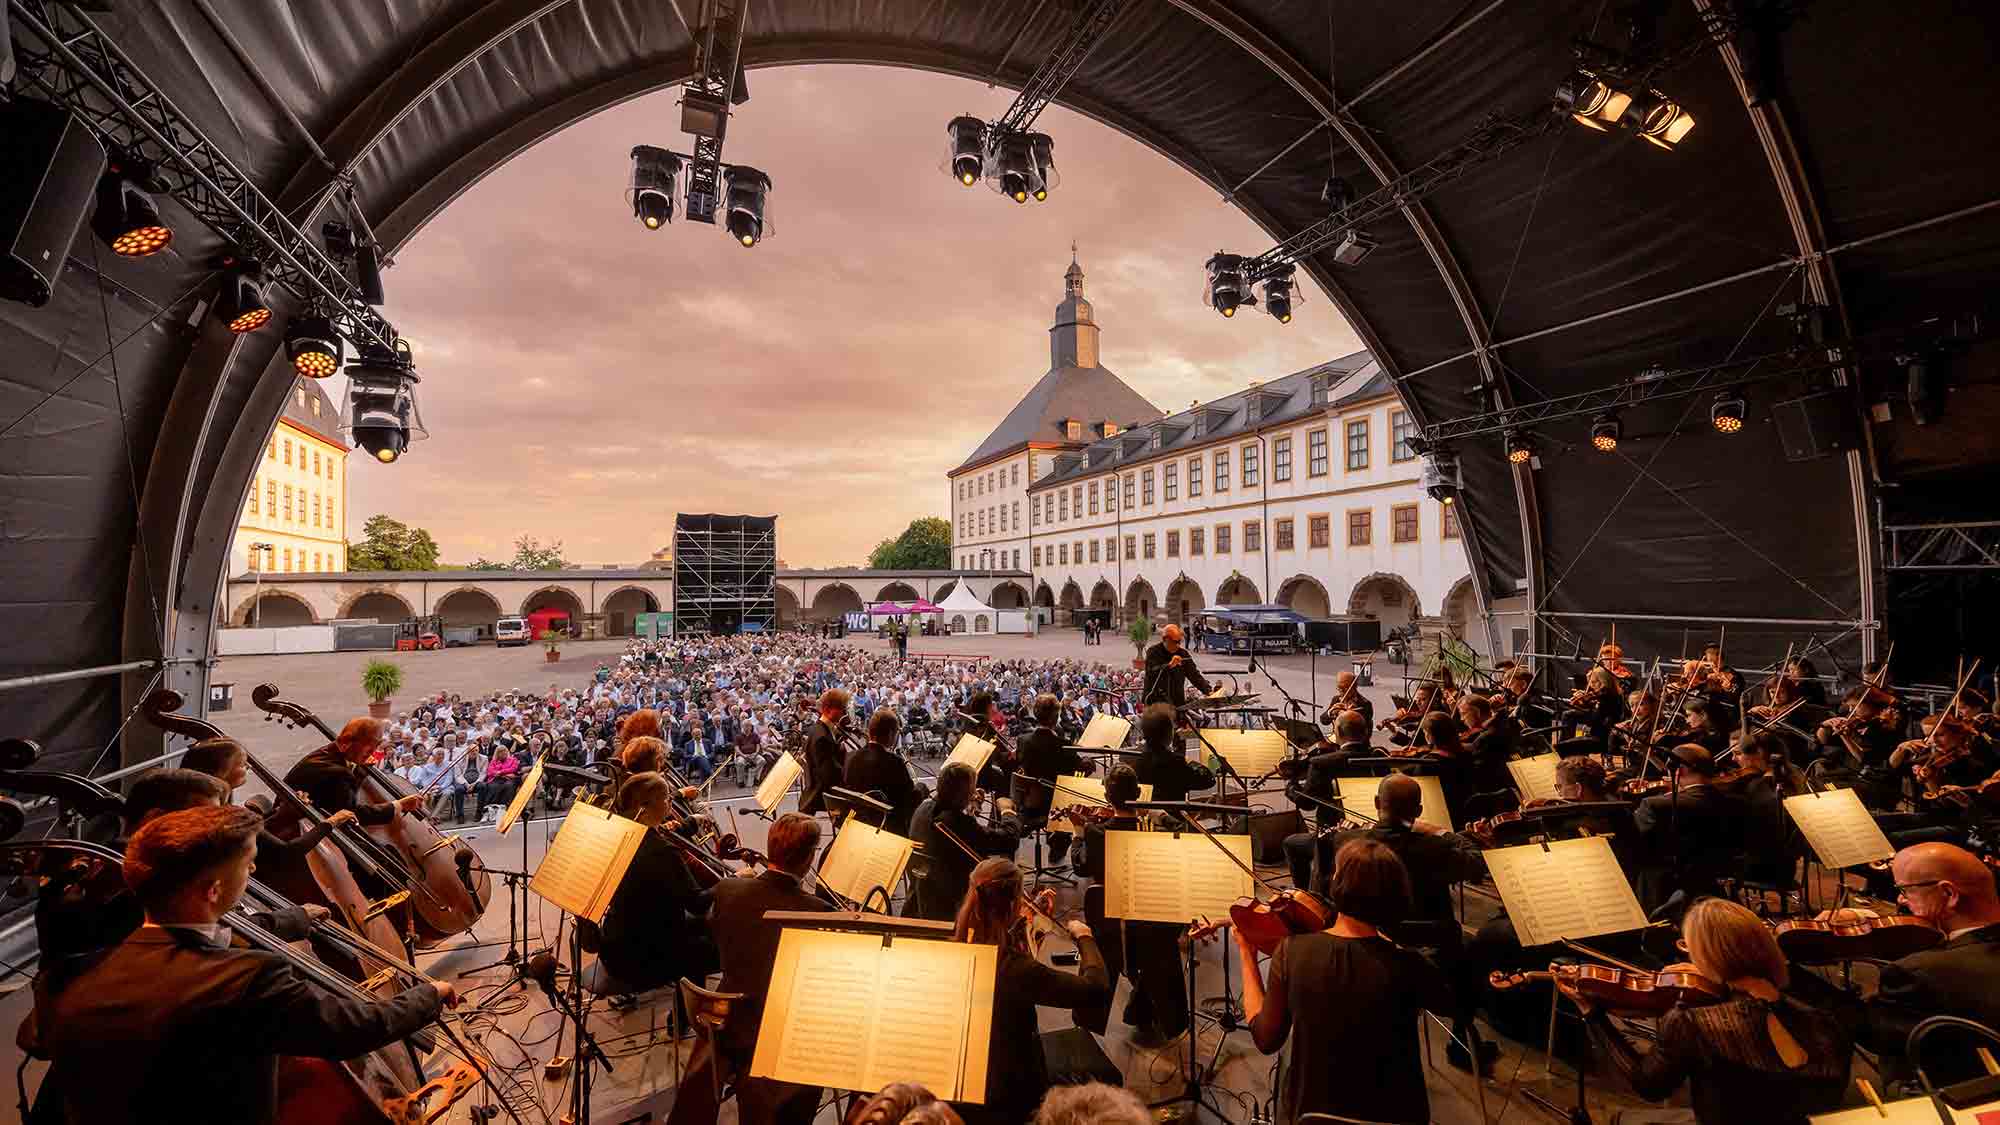 Finale für MDR Musiksommer in Lutherstadt Wittenberg – Festival begeistert mit hochkarätigen Künstlern an attraktiven Spielorten